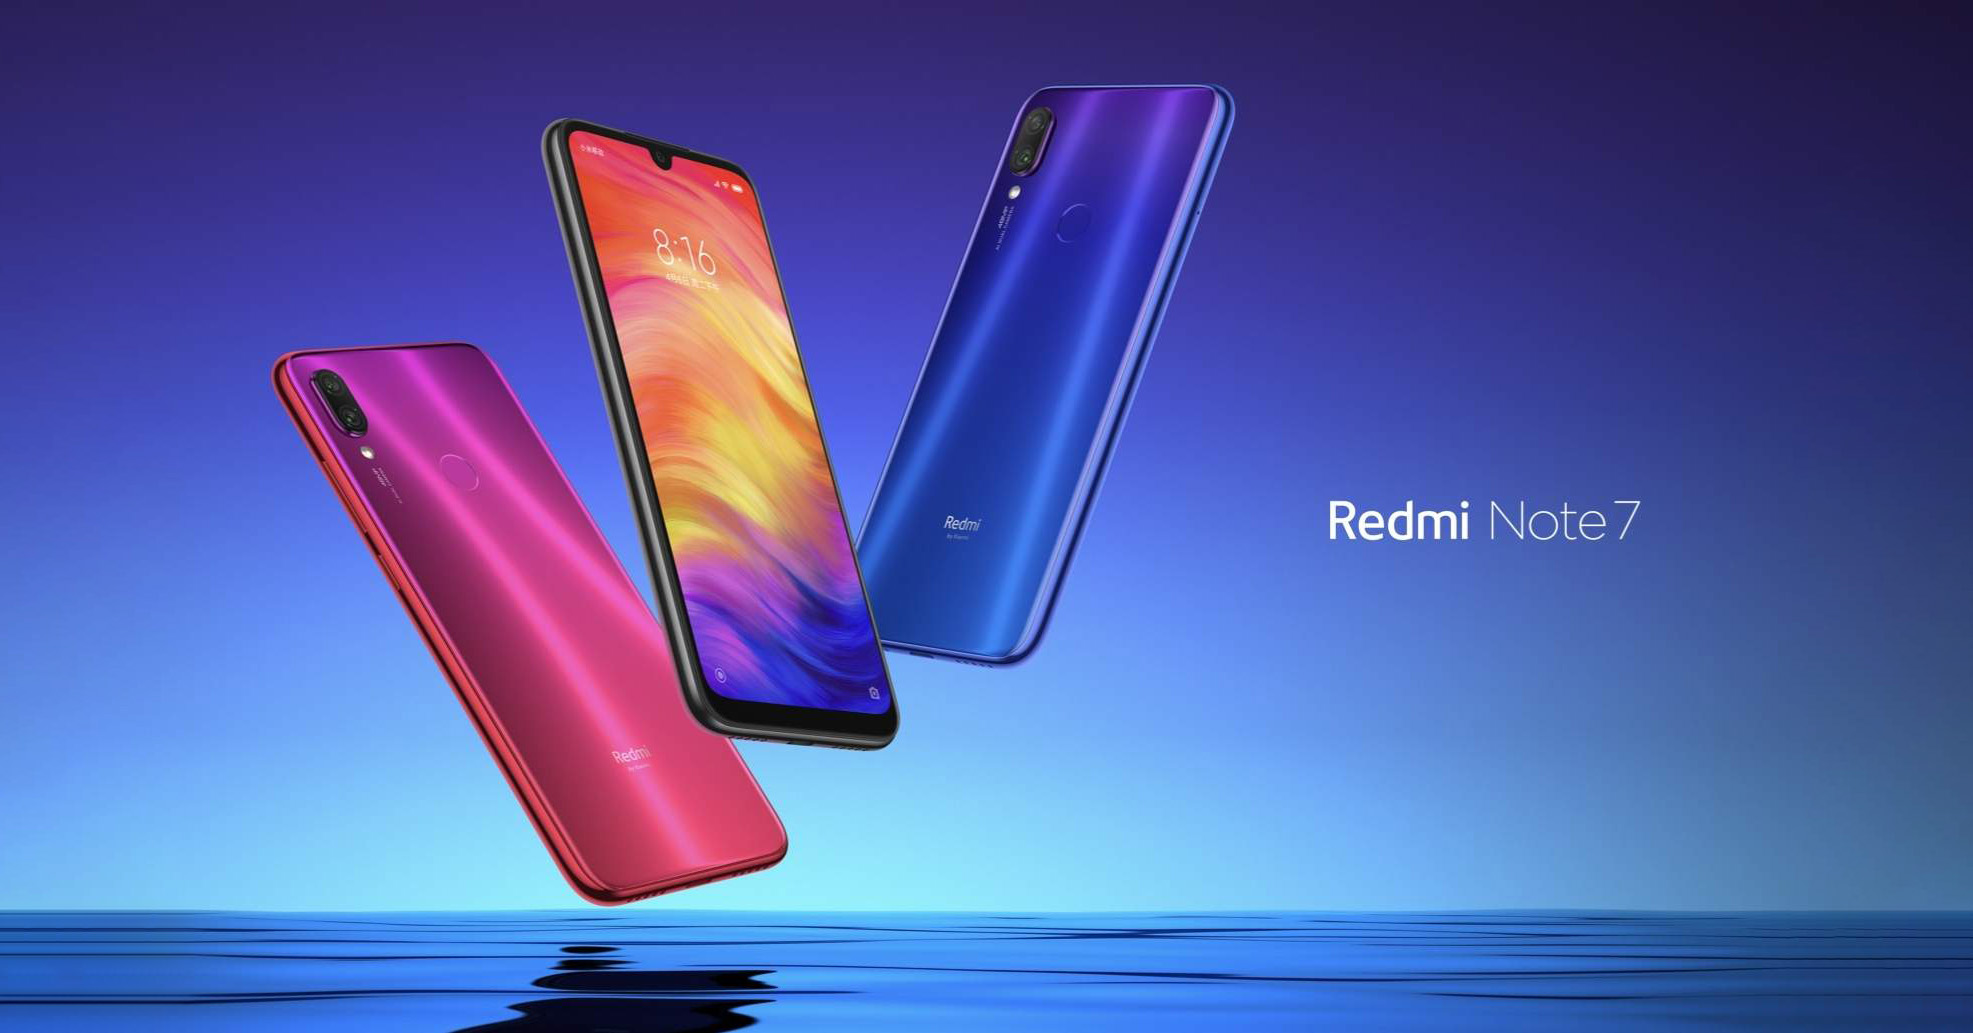 Dòng Redmi Note giống như phiên bản “nâng cấp nhẹ” của Redmi series với màn hình lớn hơn